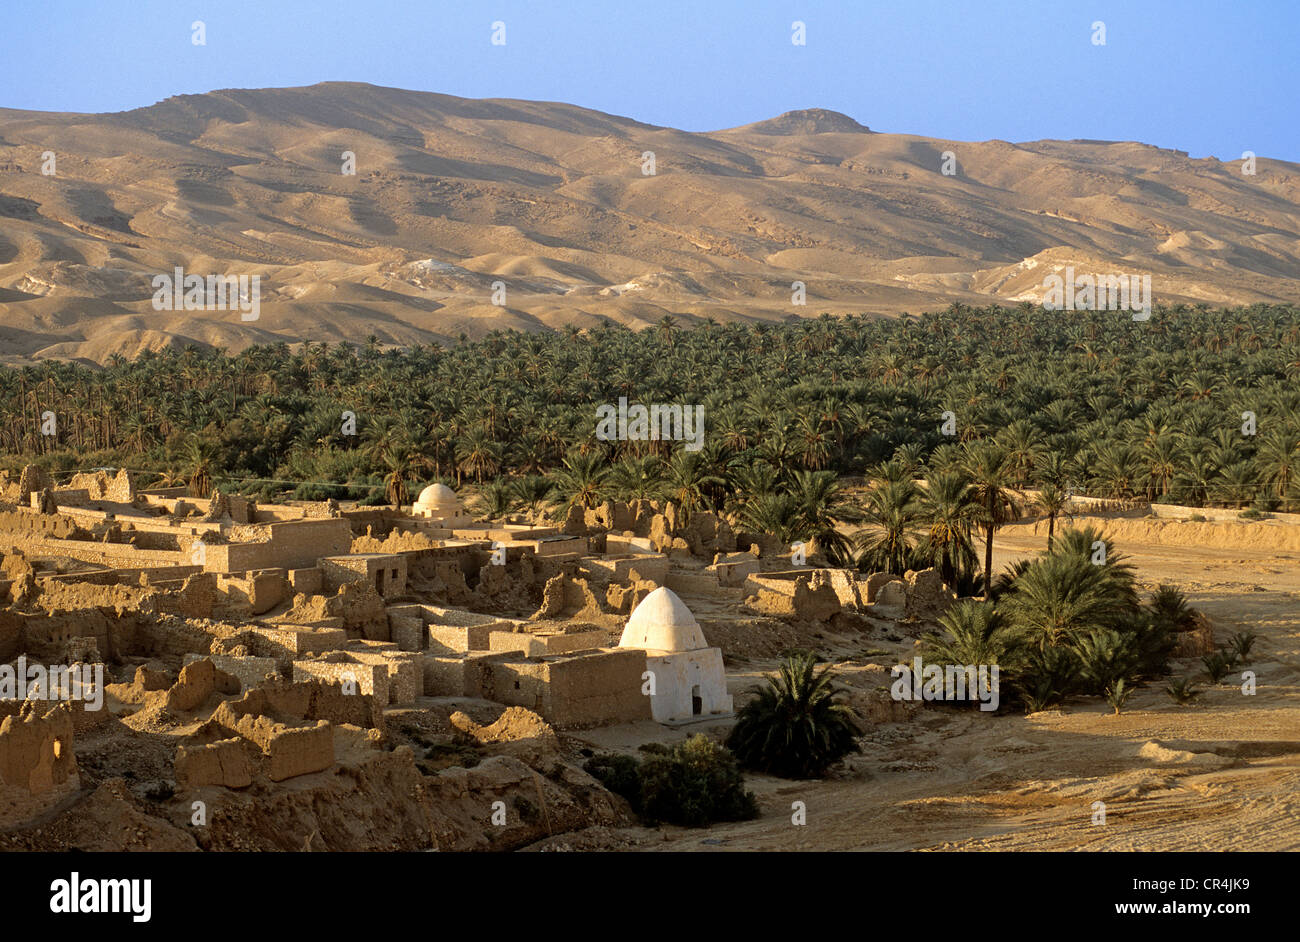 Tunisia, Tozeur Governorate, Tamerza, mountain oasis at the bottom of Atlas Mountain range, palm grove Stock Photo